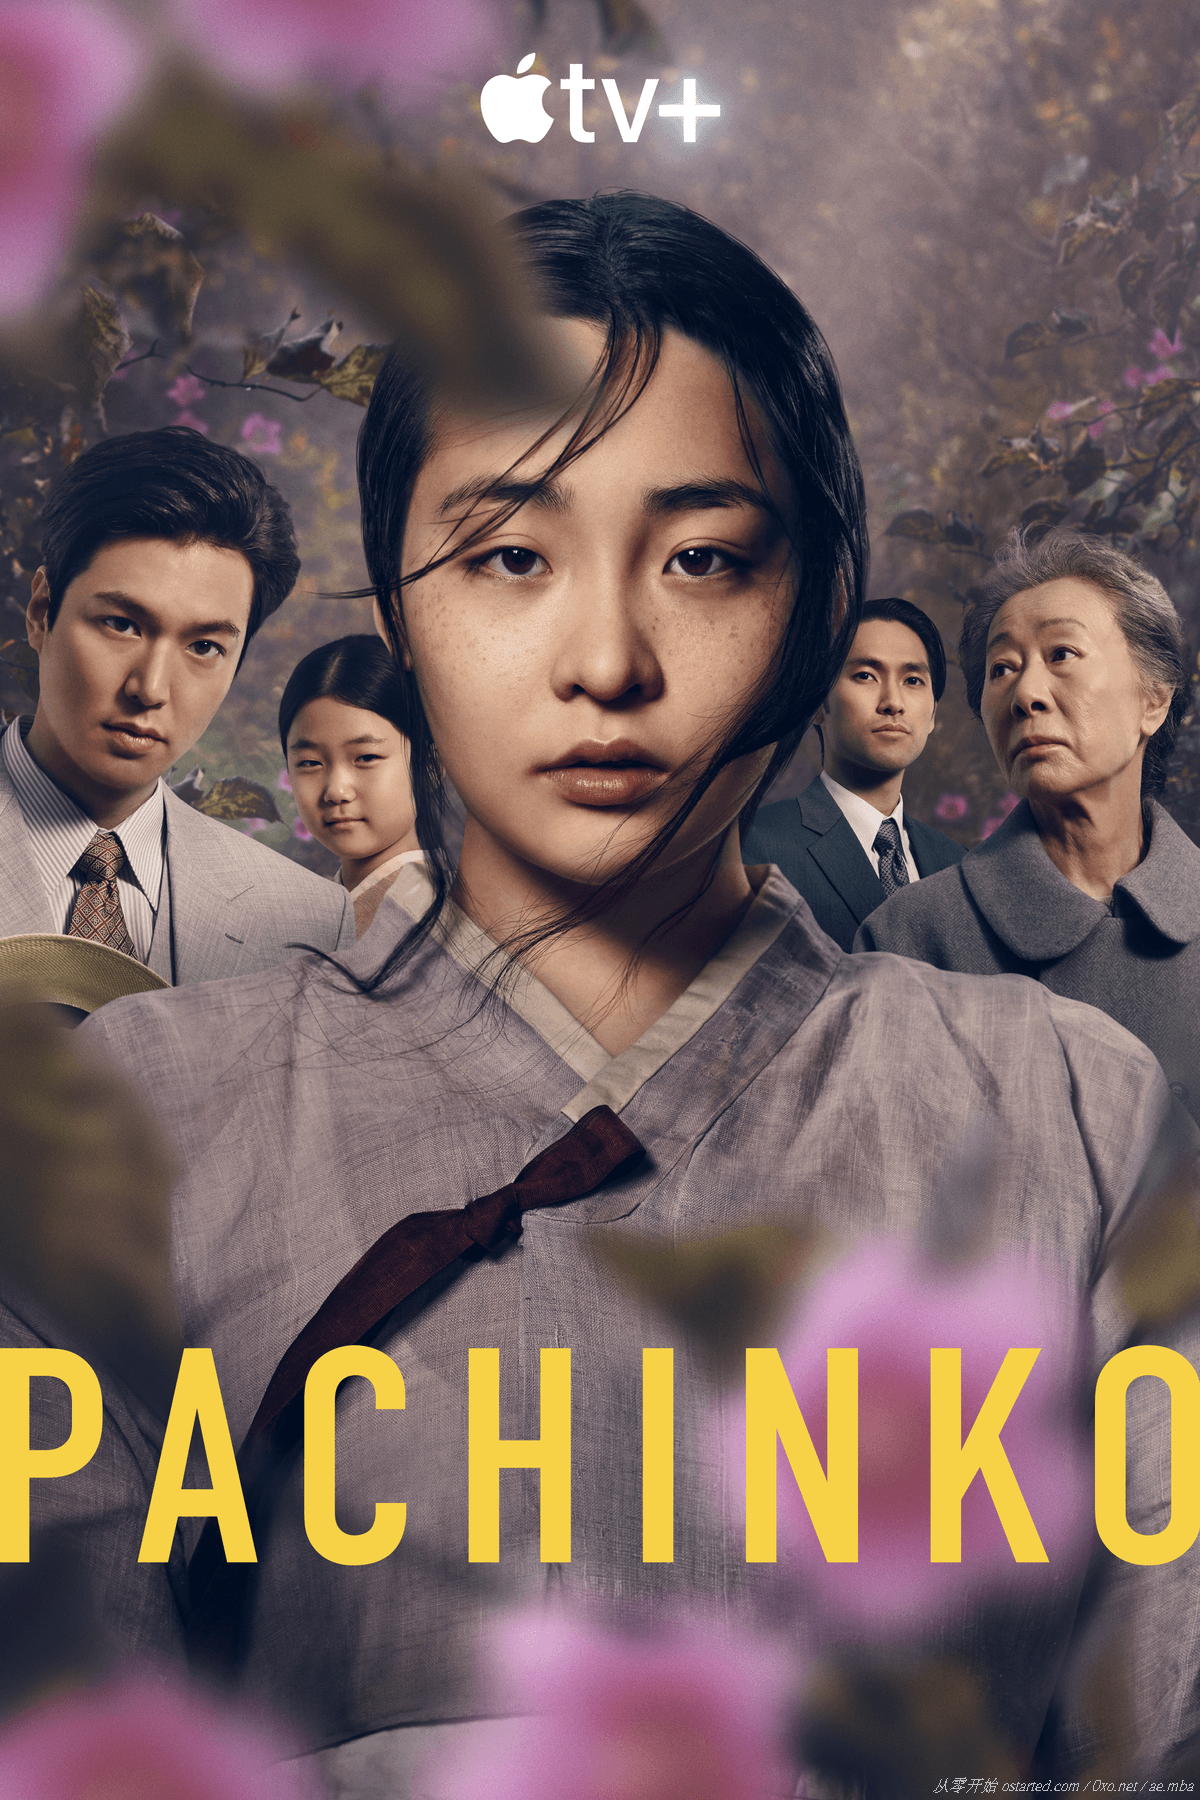 弹子球游戏 4K BT网盘下载 第一季全8集 Pachinko S01 (2022) 1080p 英日韩语中字幕 - 第2张图片